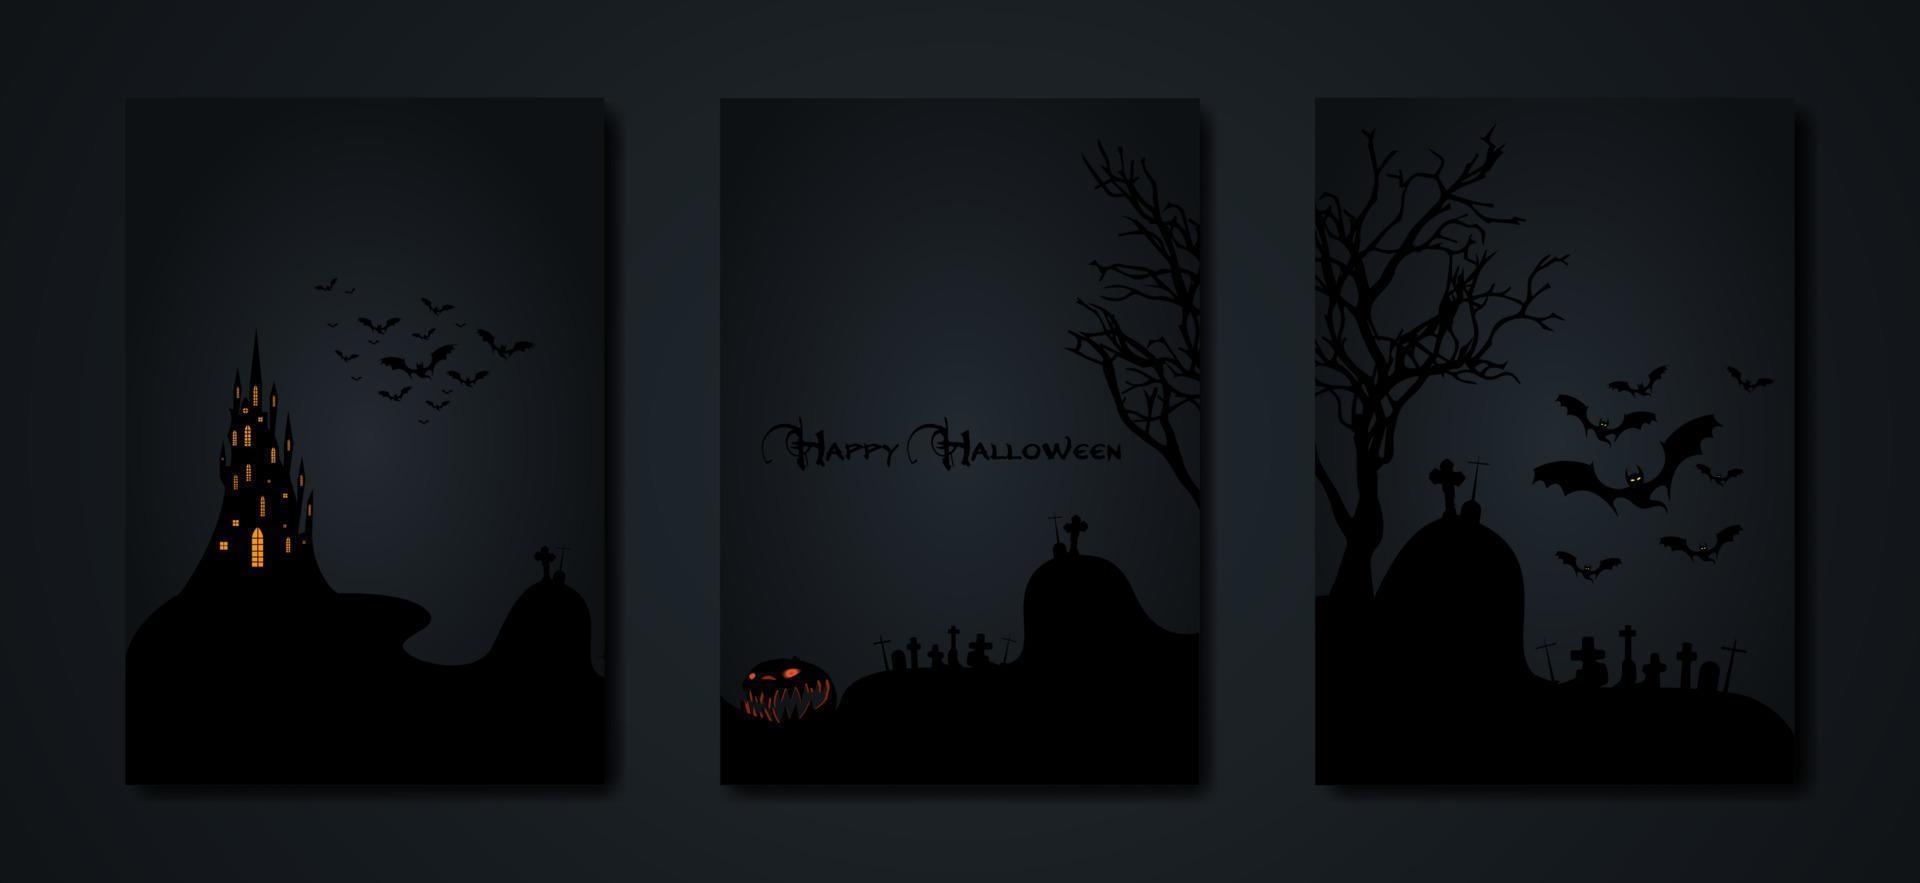 Halloween-Party, Setkarten gruseliger dunkler Hintergrund, Silhouetten von Charakteren und gruselige Fledermäuse mit gotischem Spukschloss, Horror-Themenkonzept, gruseliger Kürbis und dunkler Friedhof, Vektorvorlagen vektor